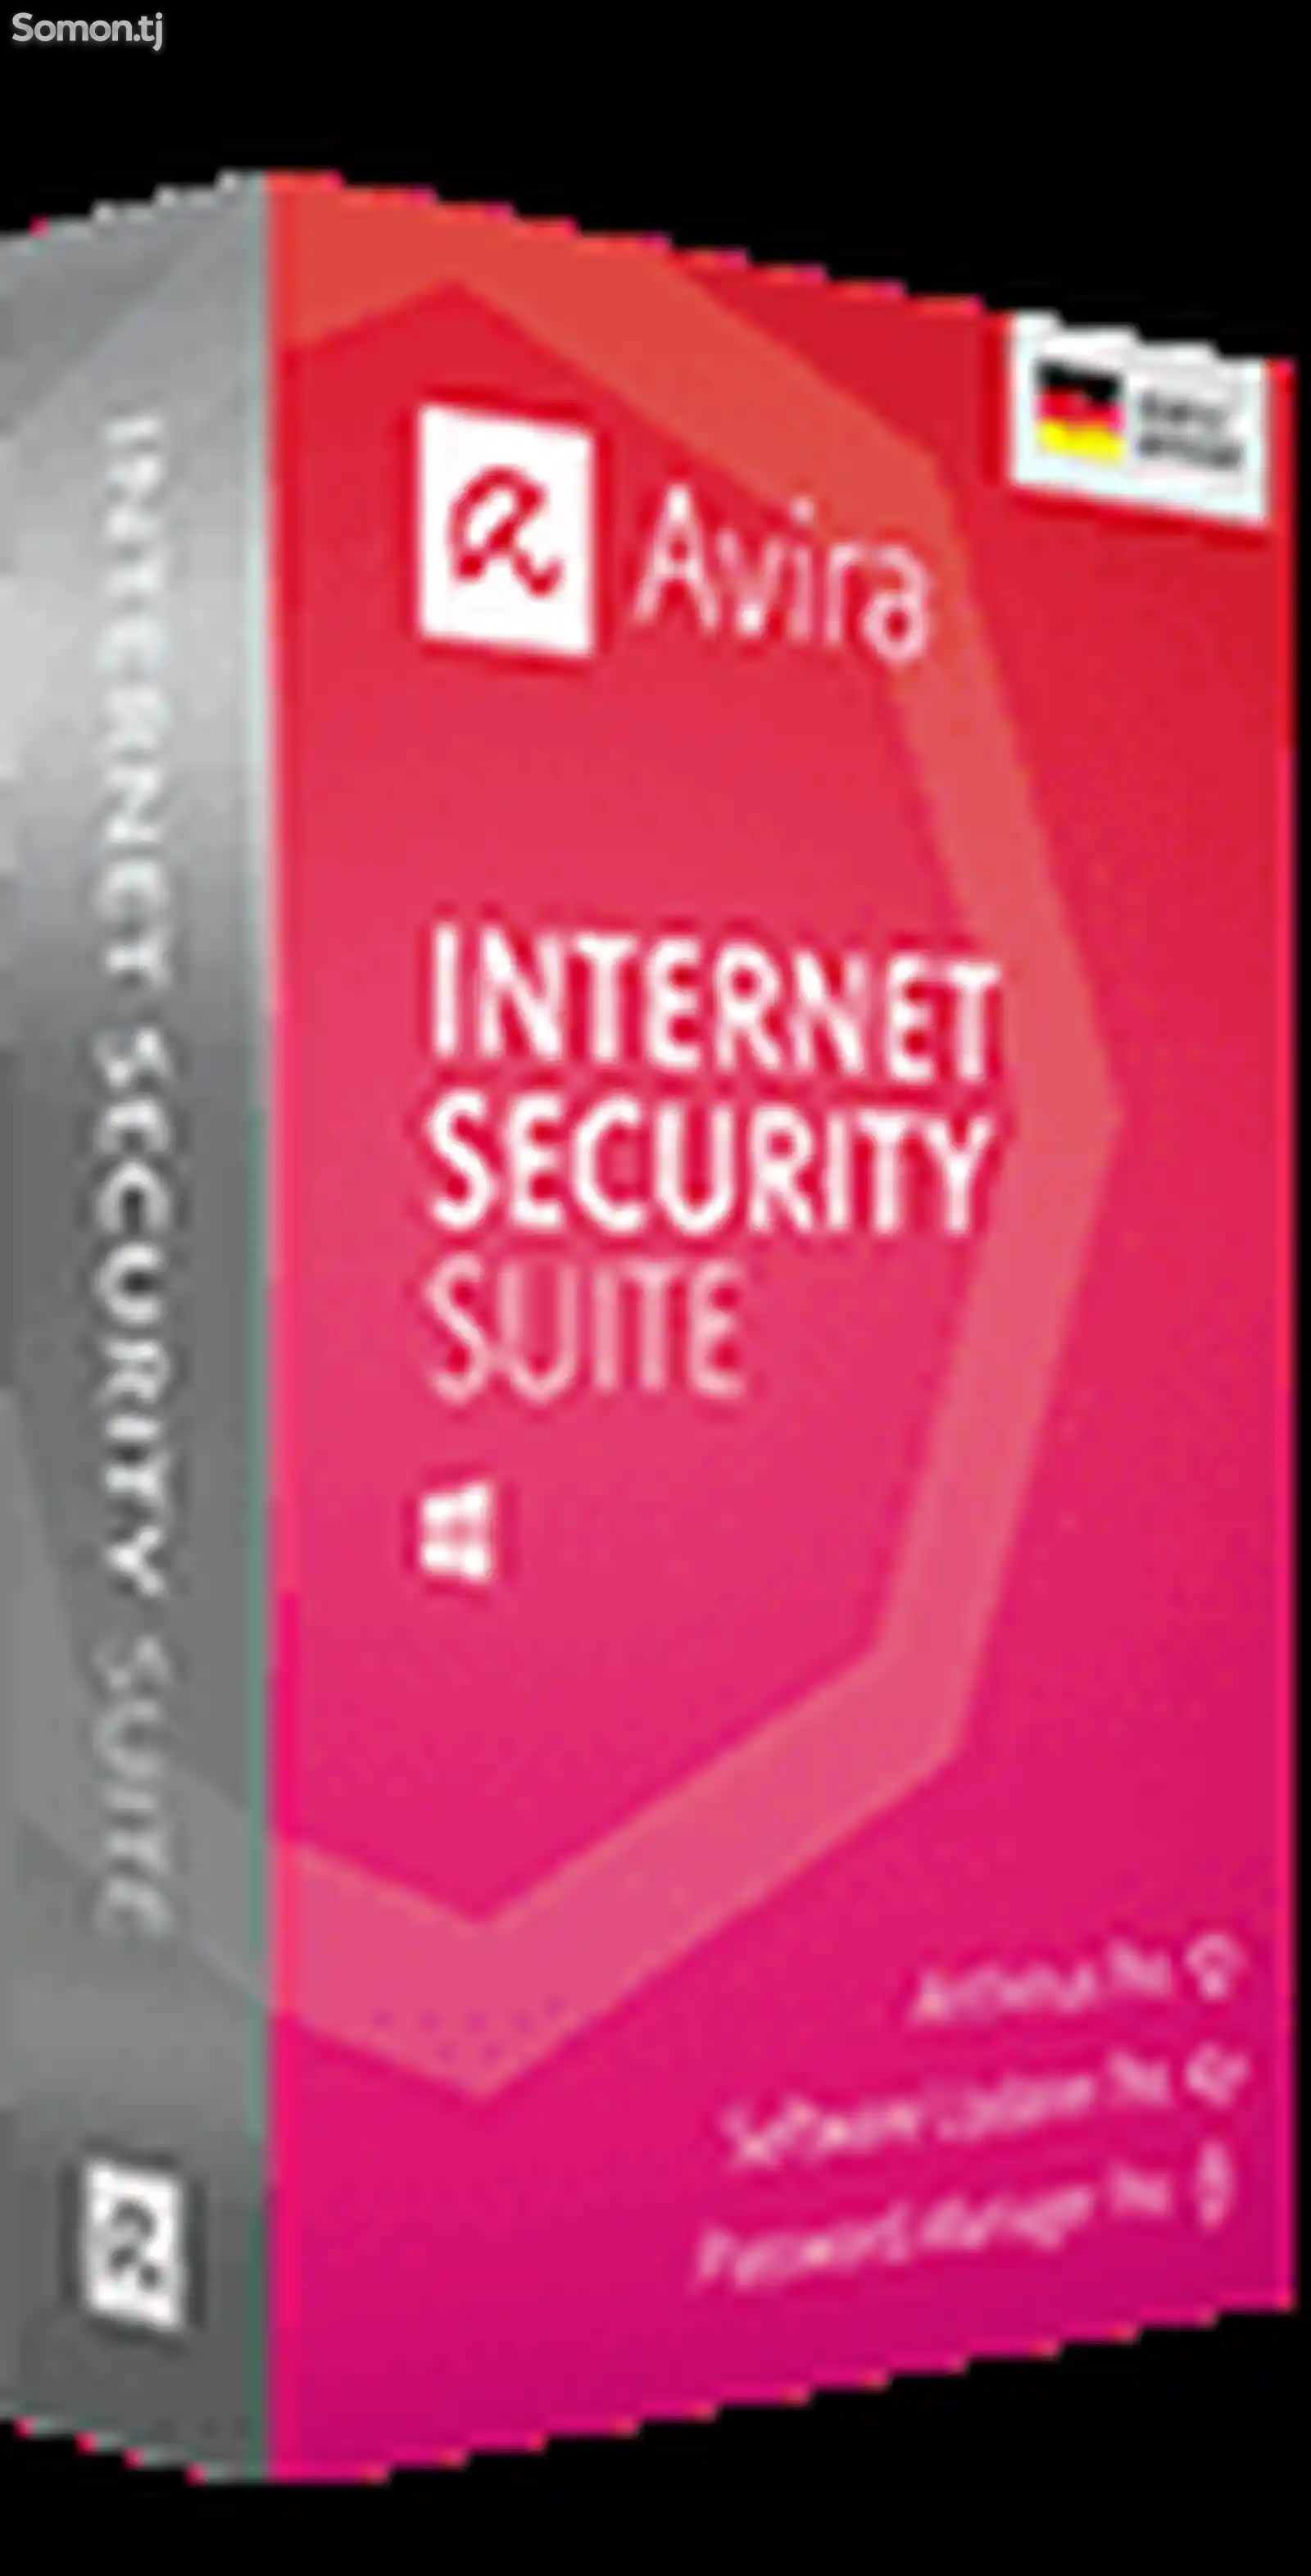 Avira Internet Security Suite - иҷозатнома барои 5 роёна, 1 сол